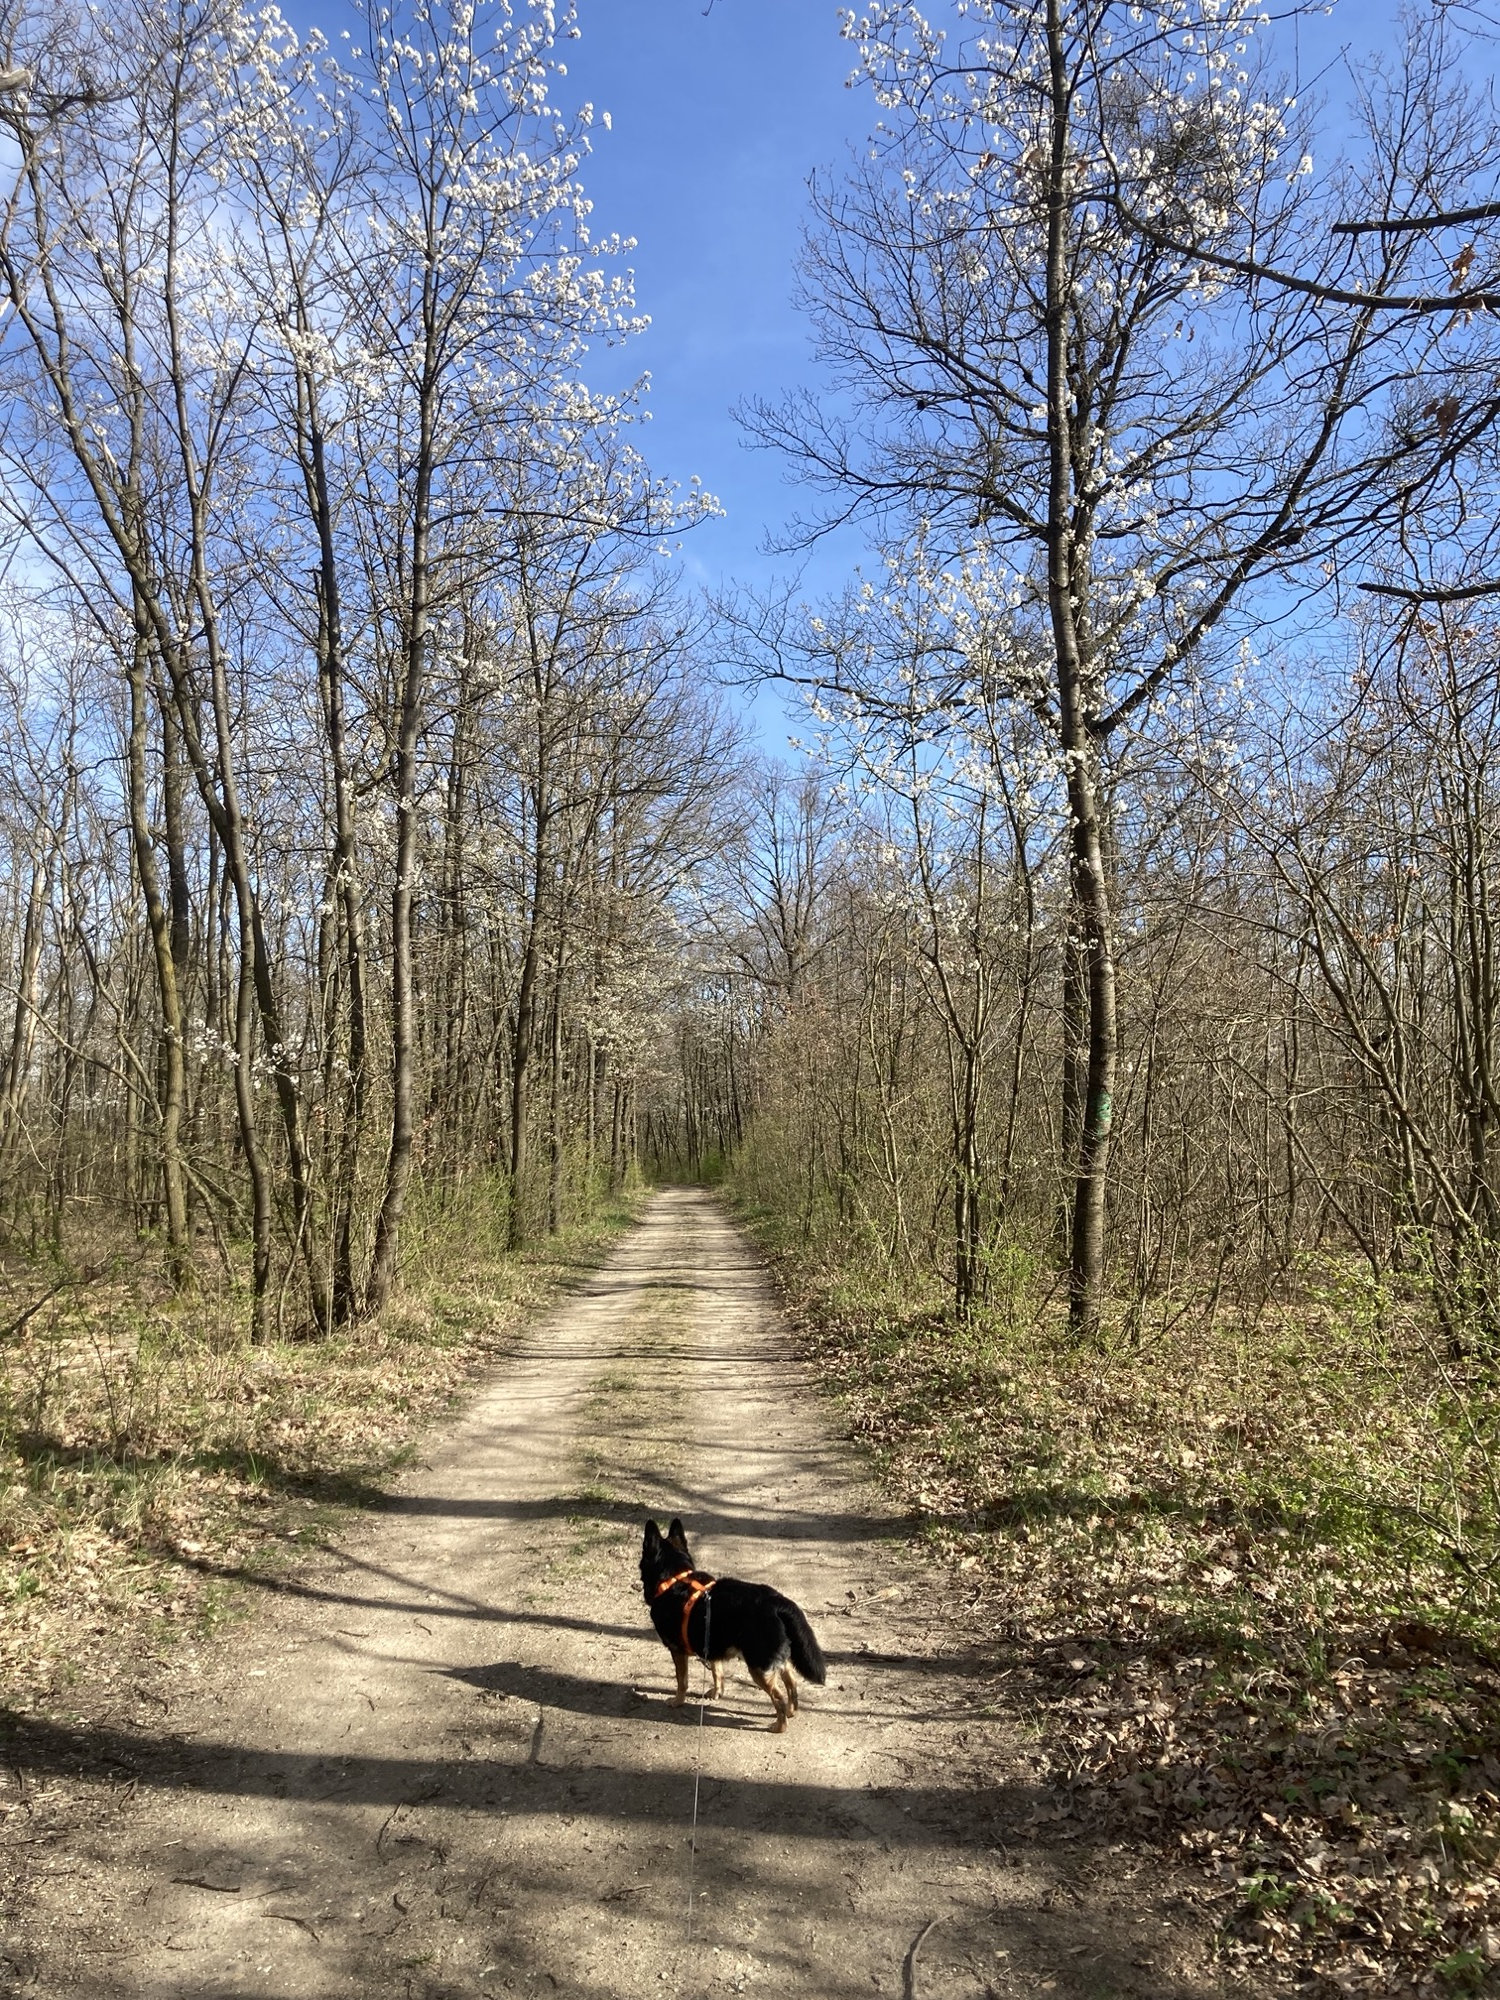 Waldweg im Frühling, links und rechts blühen manche Bäume schon, auf dem Waldweg steht ein schwarzer Hund und schaut von der Kamera weg